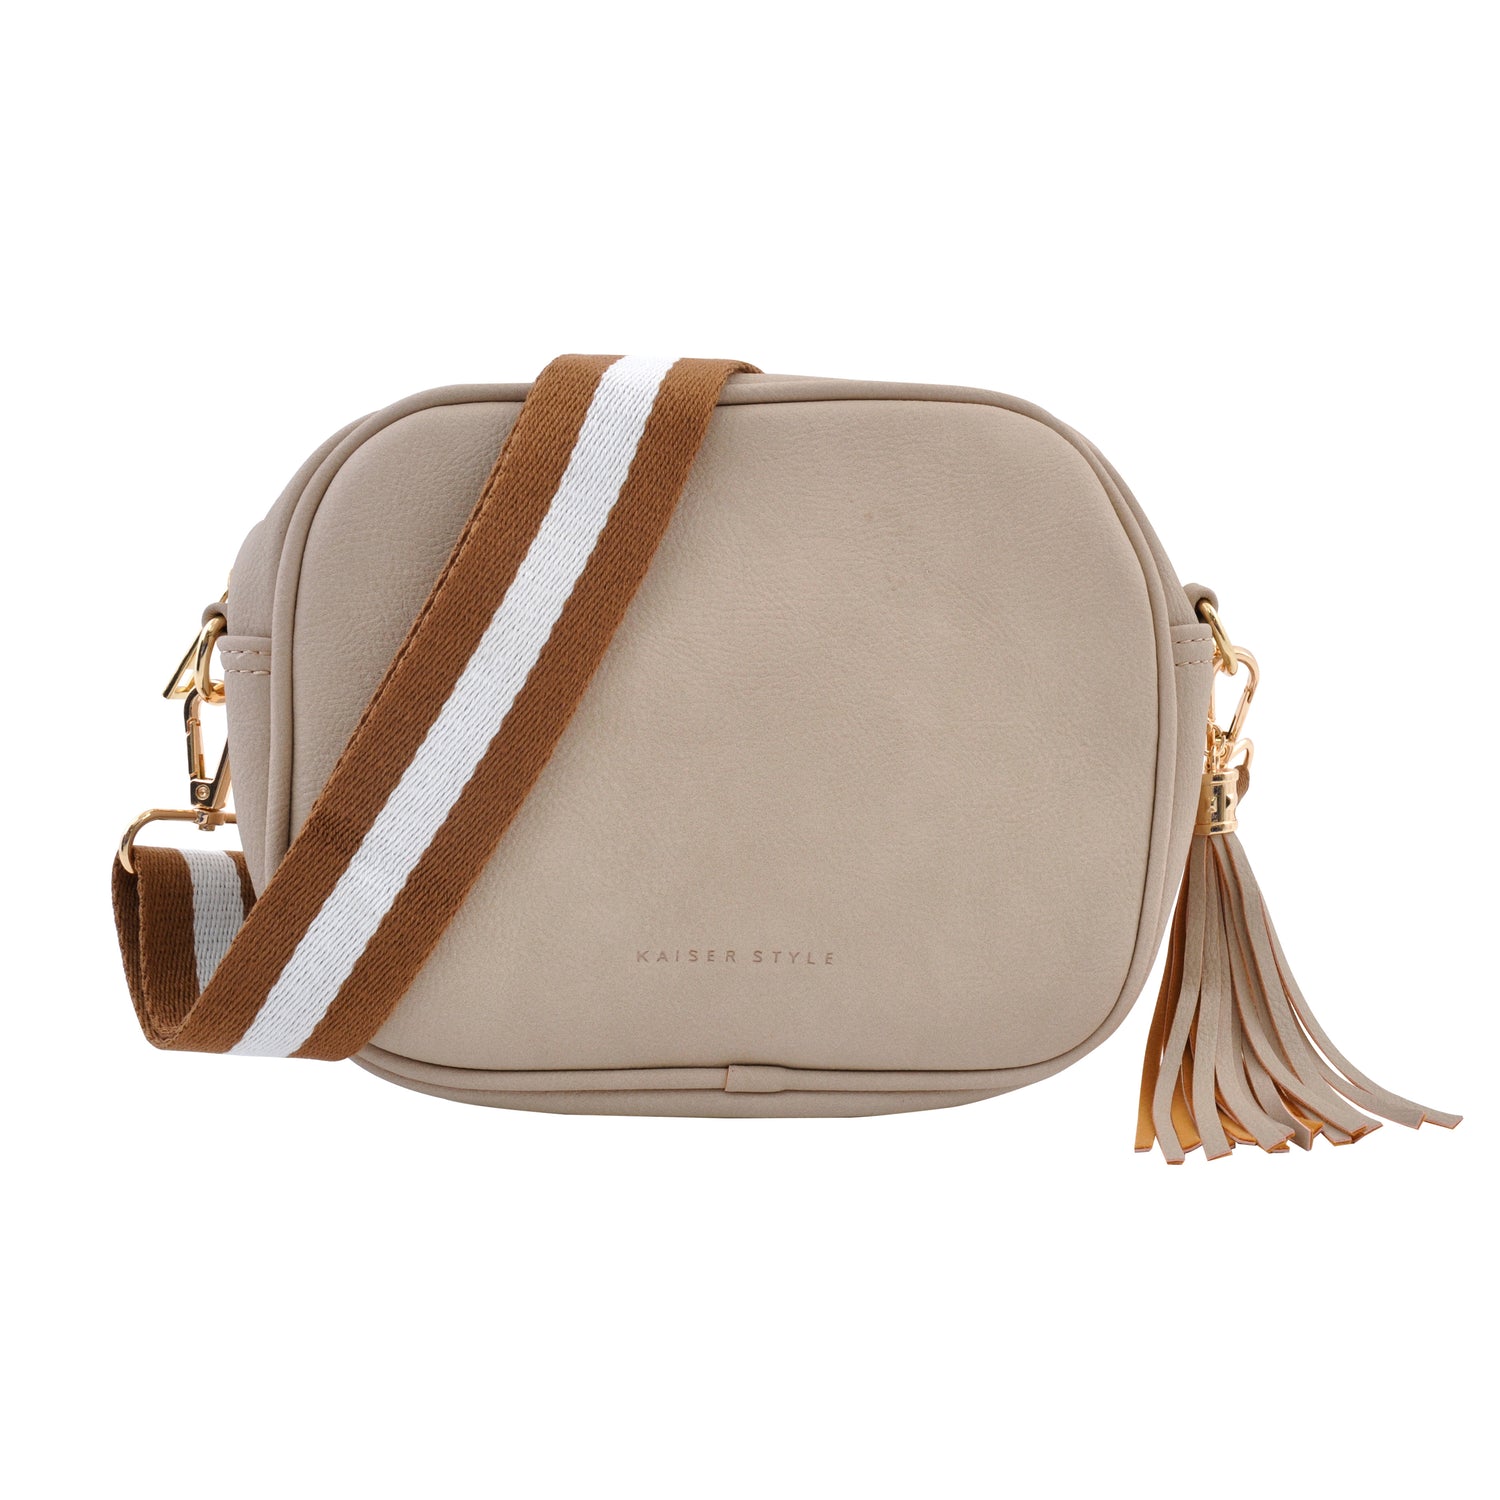 Fashion - Bags - Medium Handbags